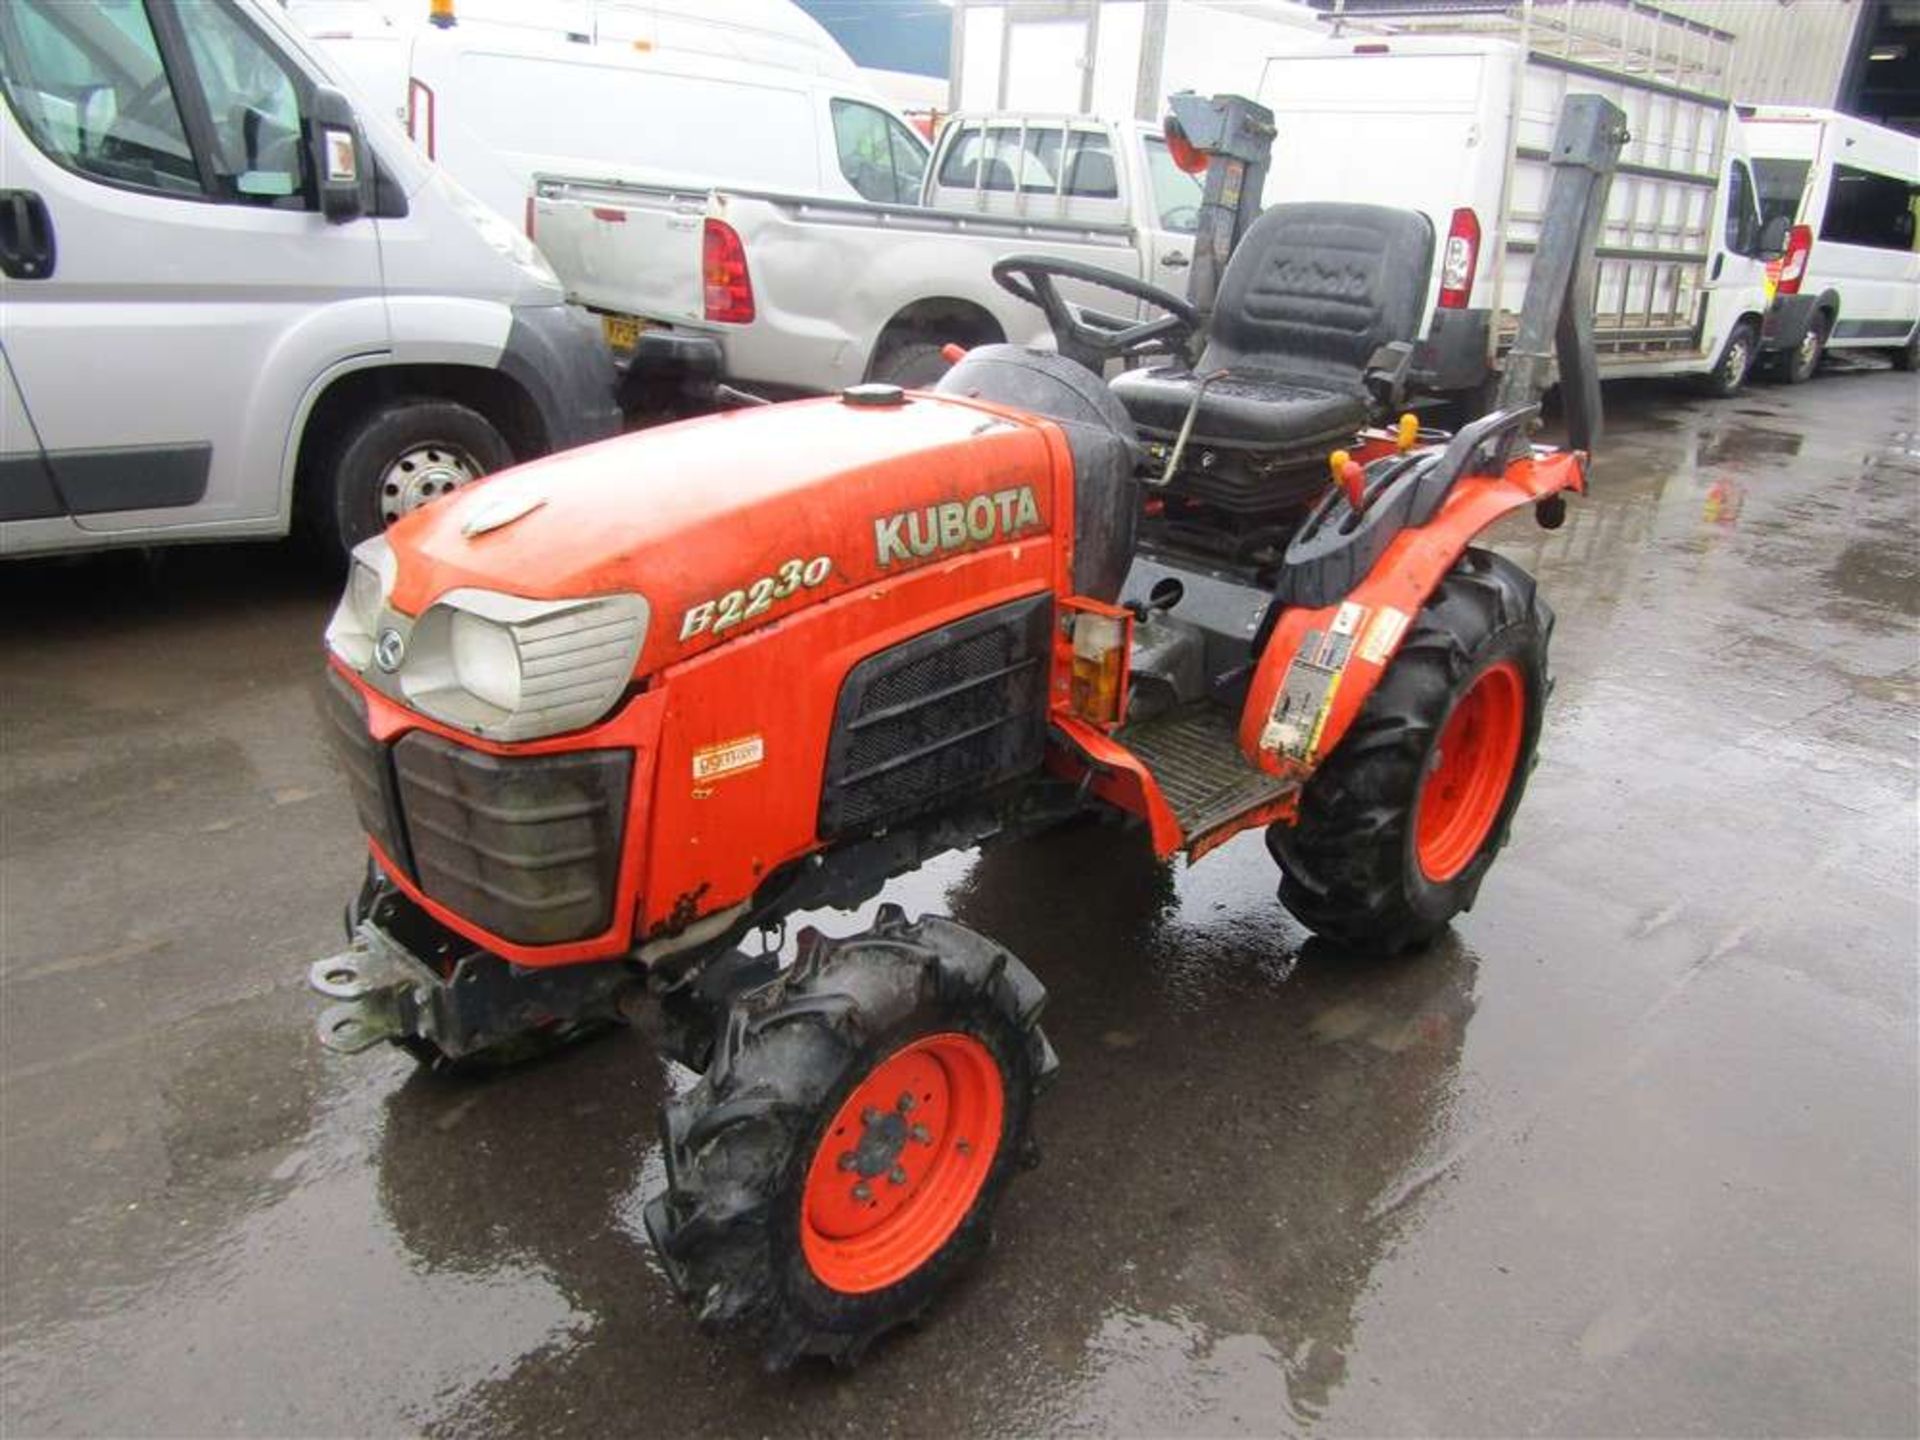 2009 09 reg Kubota B2230 Tractor - Bild 2 aus 4